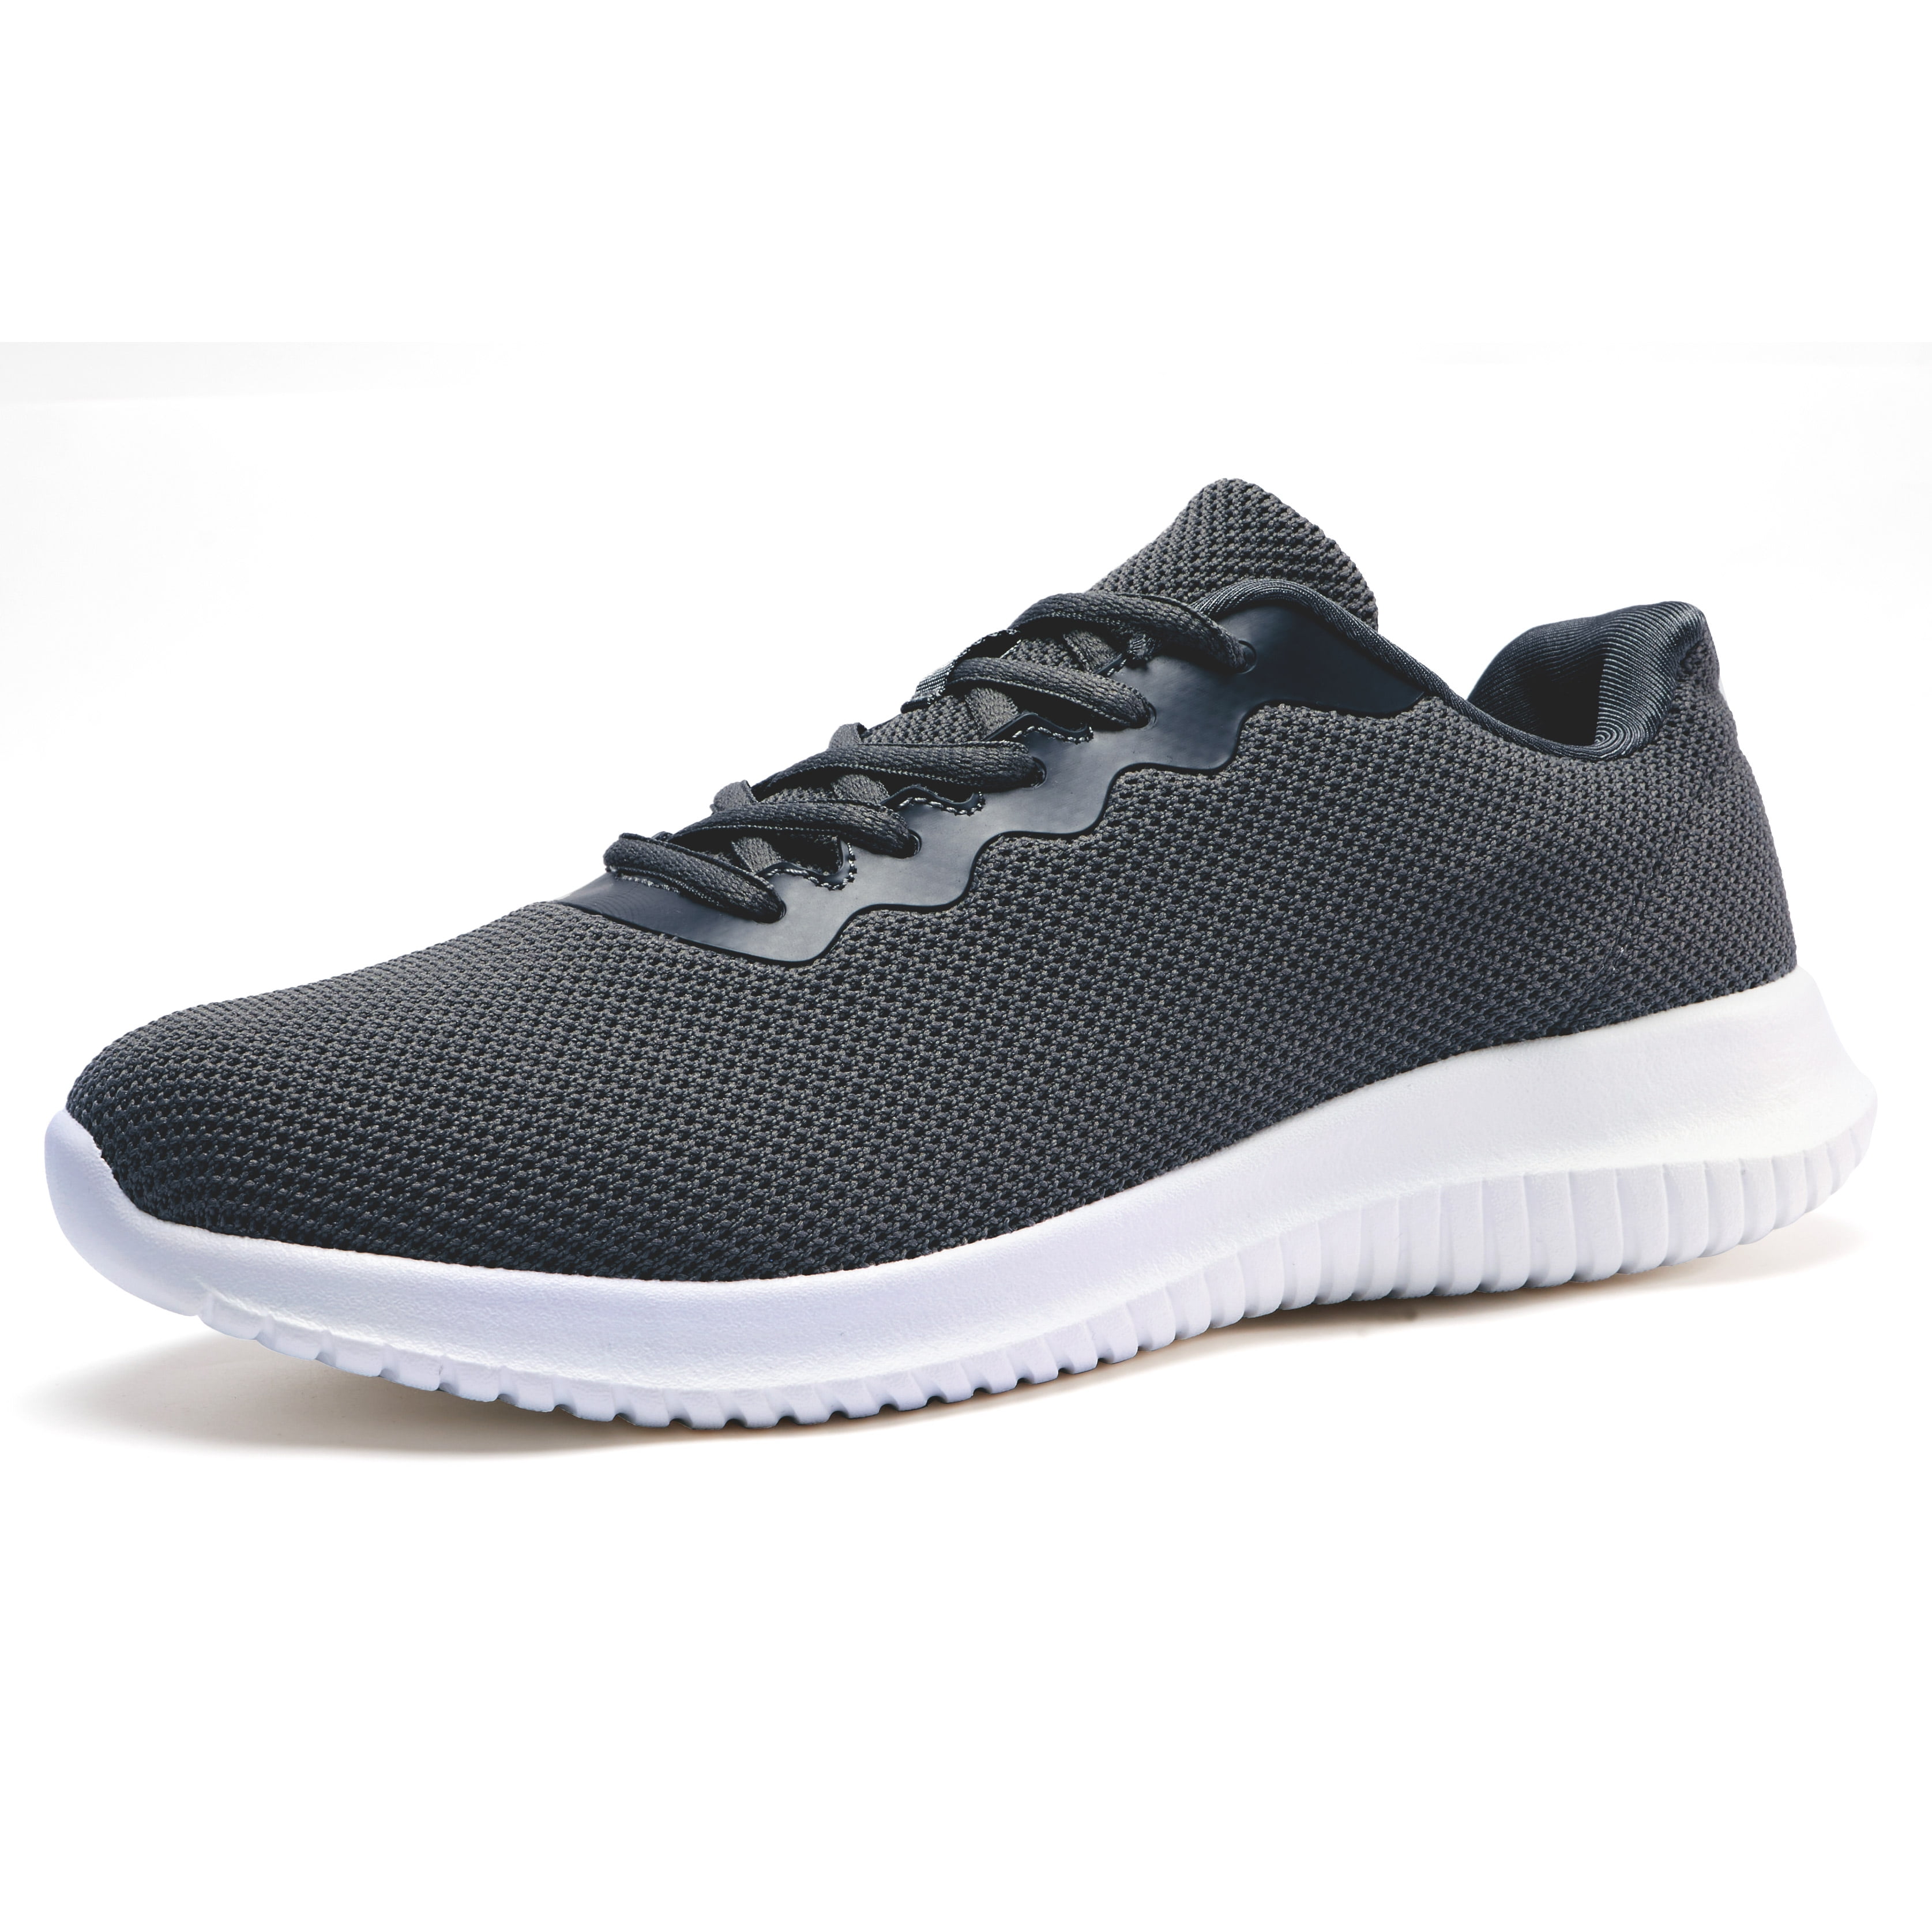 Akk Men's Comfortable Gym Walking Indoor Outdoor Sneakers Gray Size 8 ...